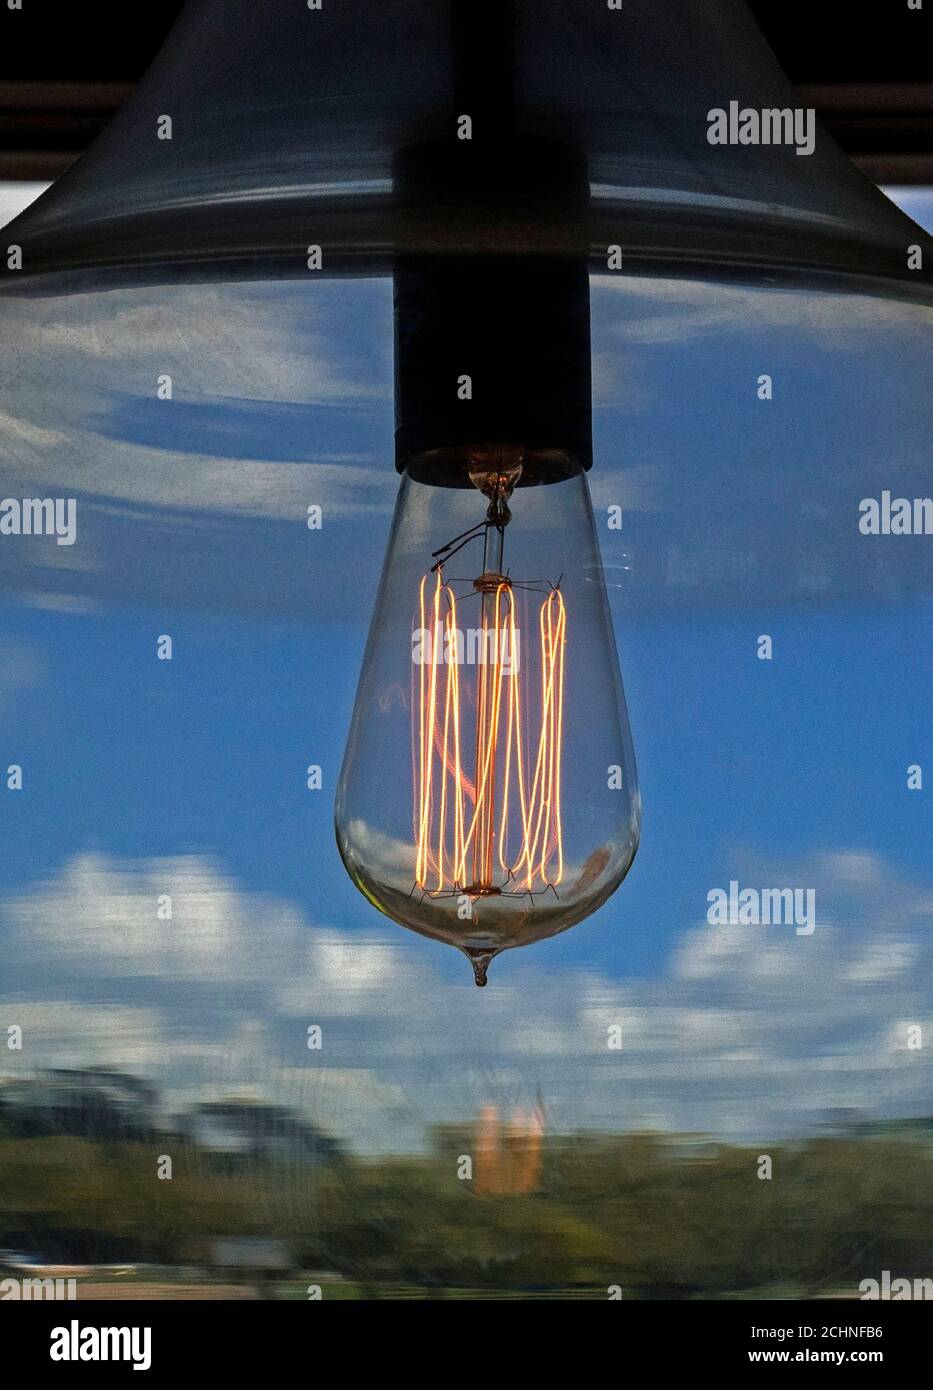 Von Thomas Edison inspirierte Glühbirne im Retro-Look erstrahlt in einem Restaurant durch einen hängenden Globus. Stockfoto